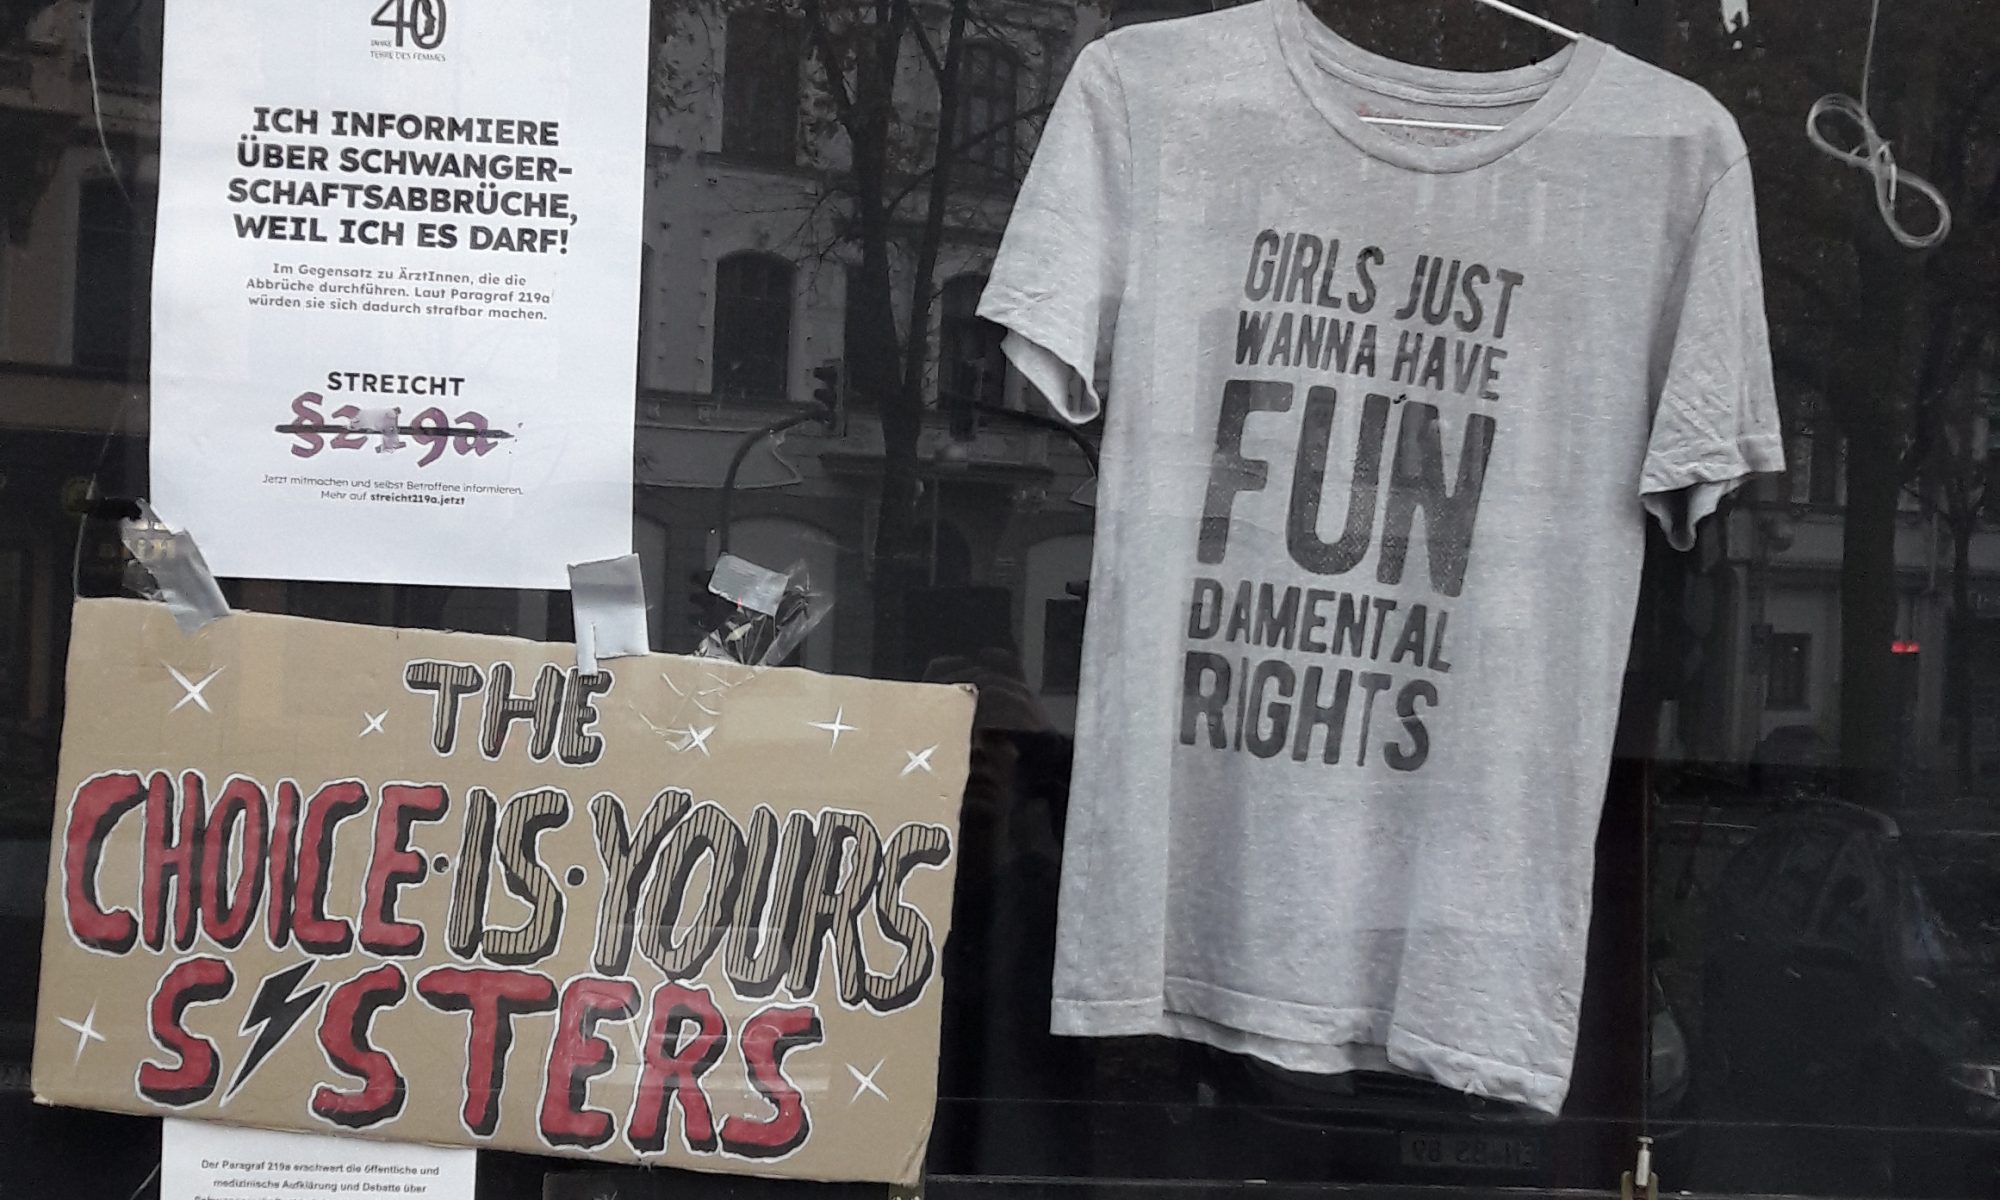 Schaufenster zum Thema Paragraf 219a: ein T-Shirt, eine Tafel „The choice is yours, sisters“, fünf A4-Zettel und ein A3-Zettel mit Texten